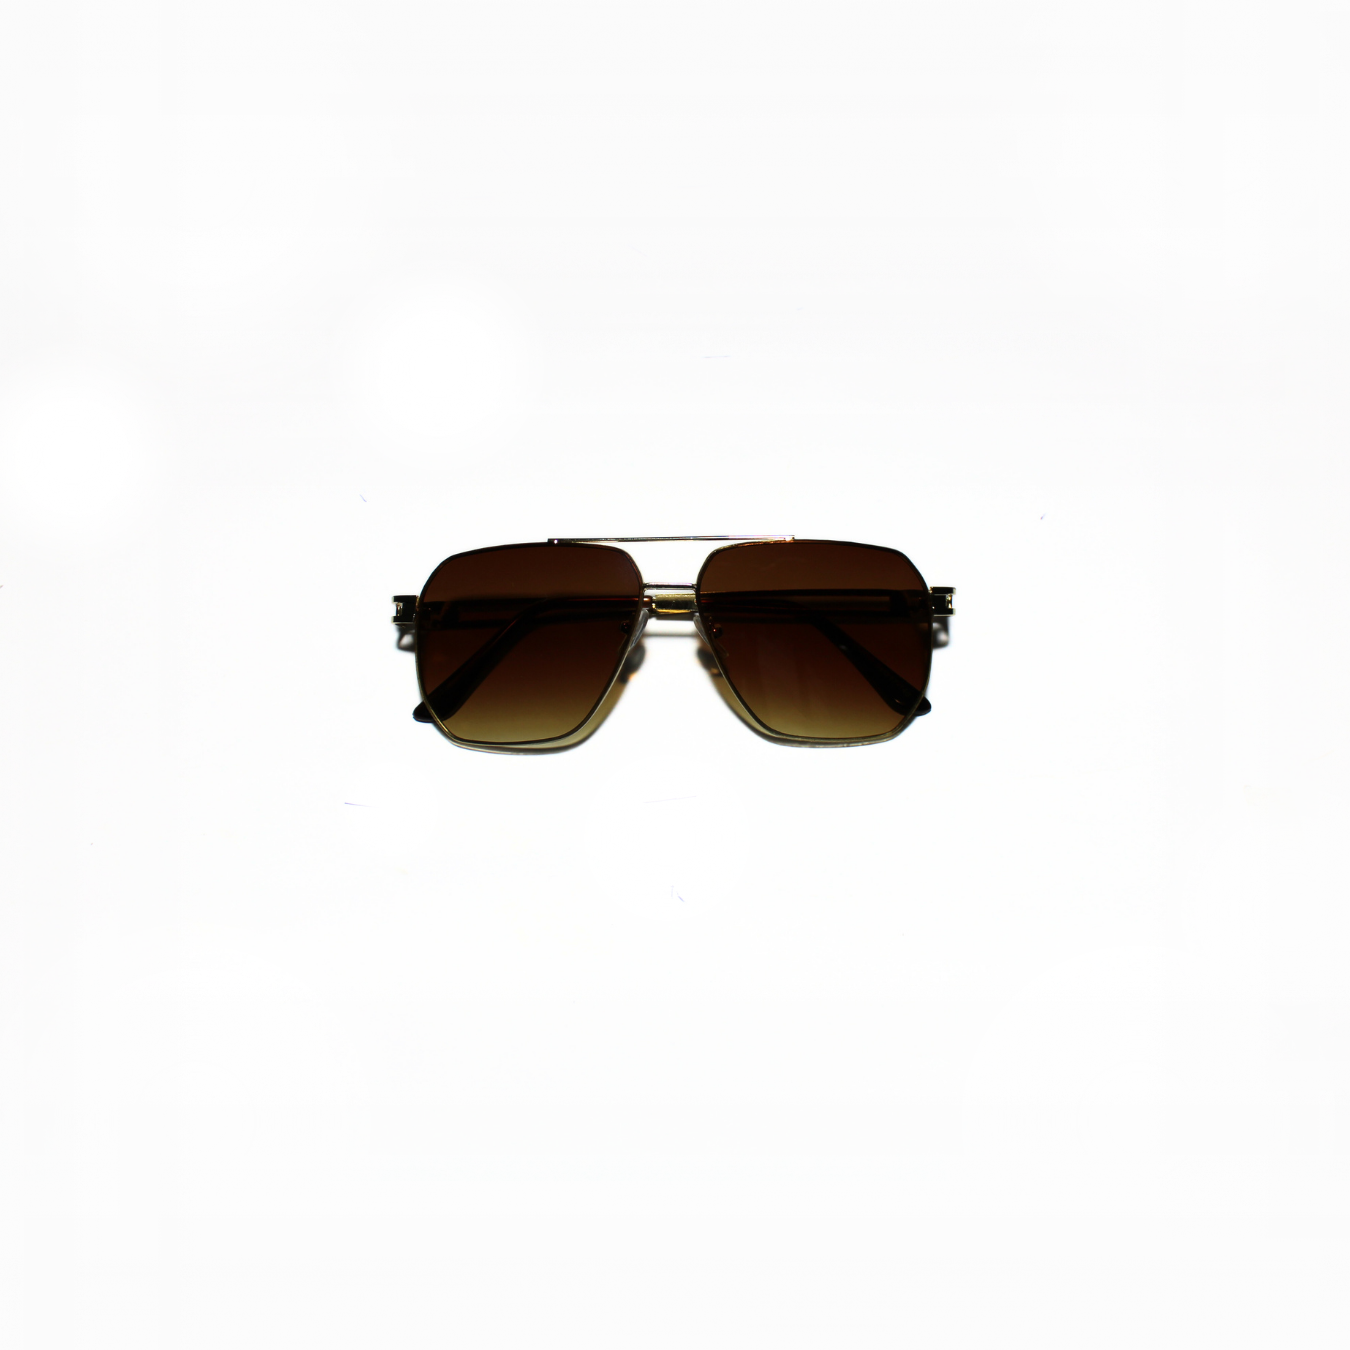 ARTHUR-I//006 I Sunglasses for Women - Specsview